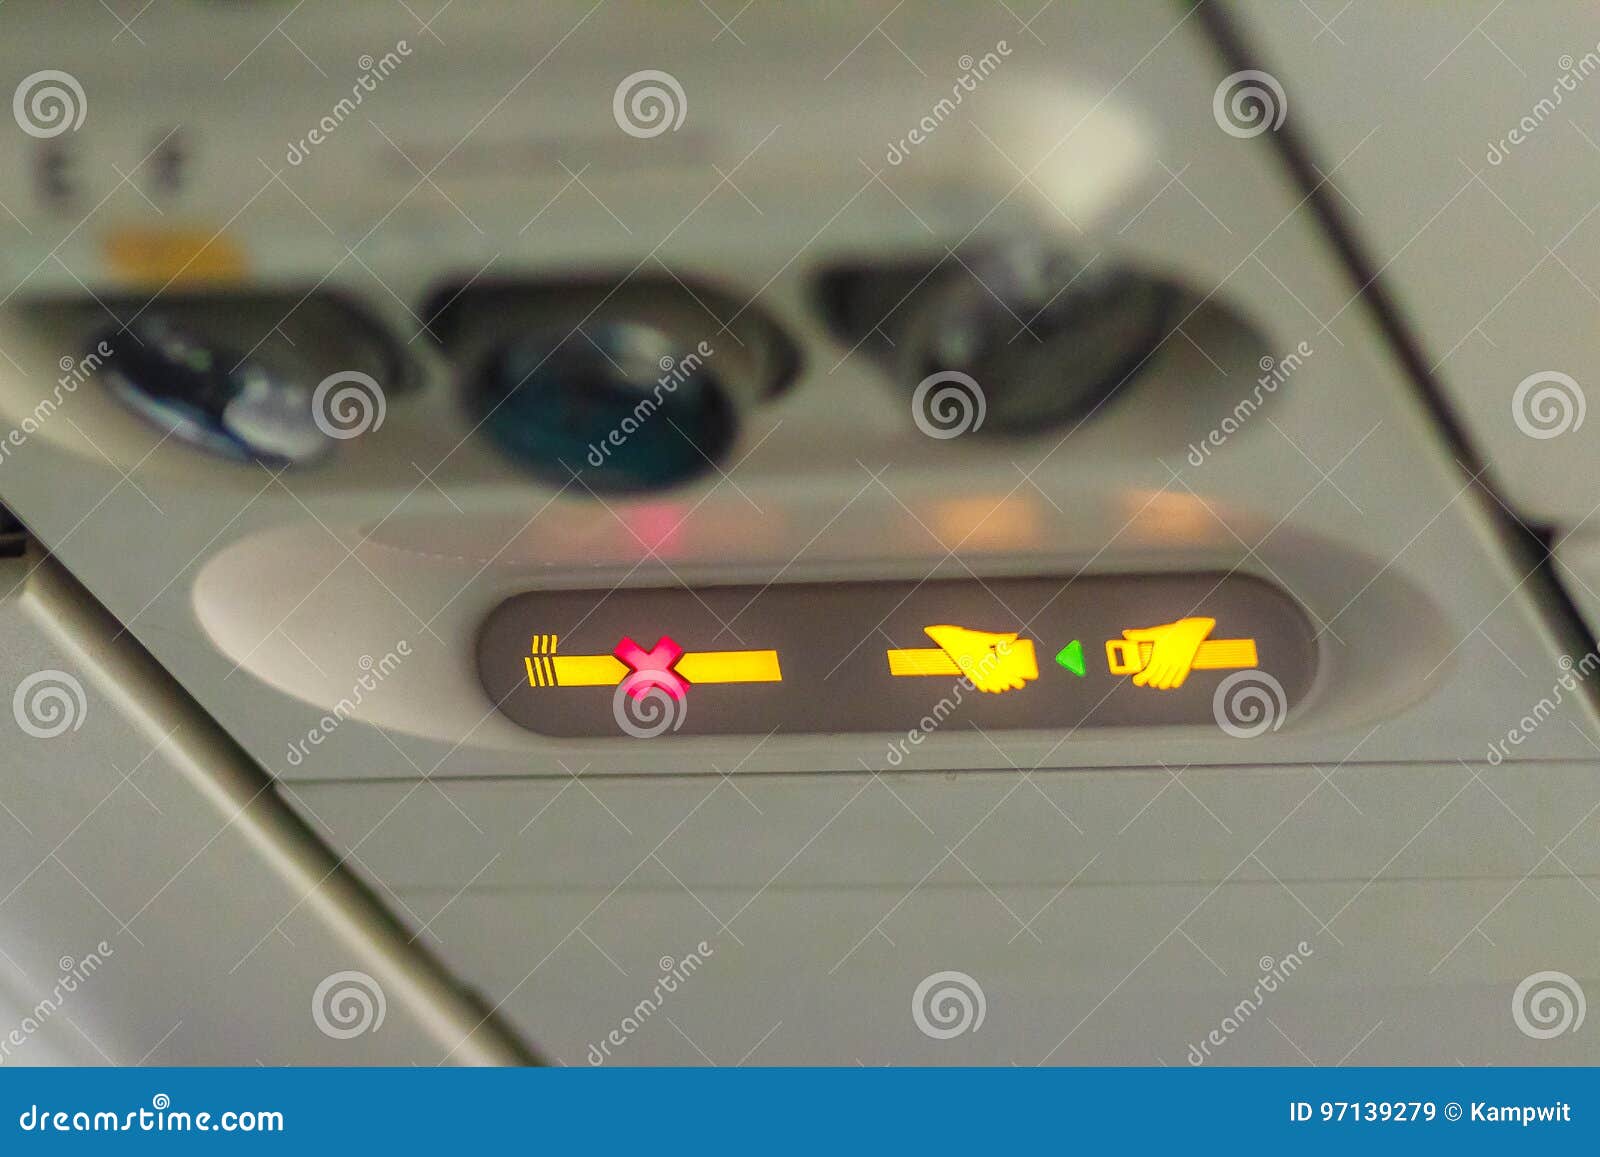 Non-fumeurs Et Attachez Le Signe De Ceinture De Sécurité à L'intérieur D'un Avion  Attachez Image stock - Image du lumière, above: 97139279